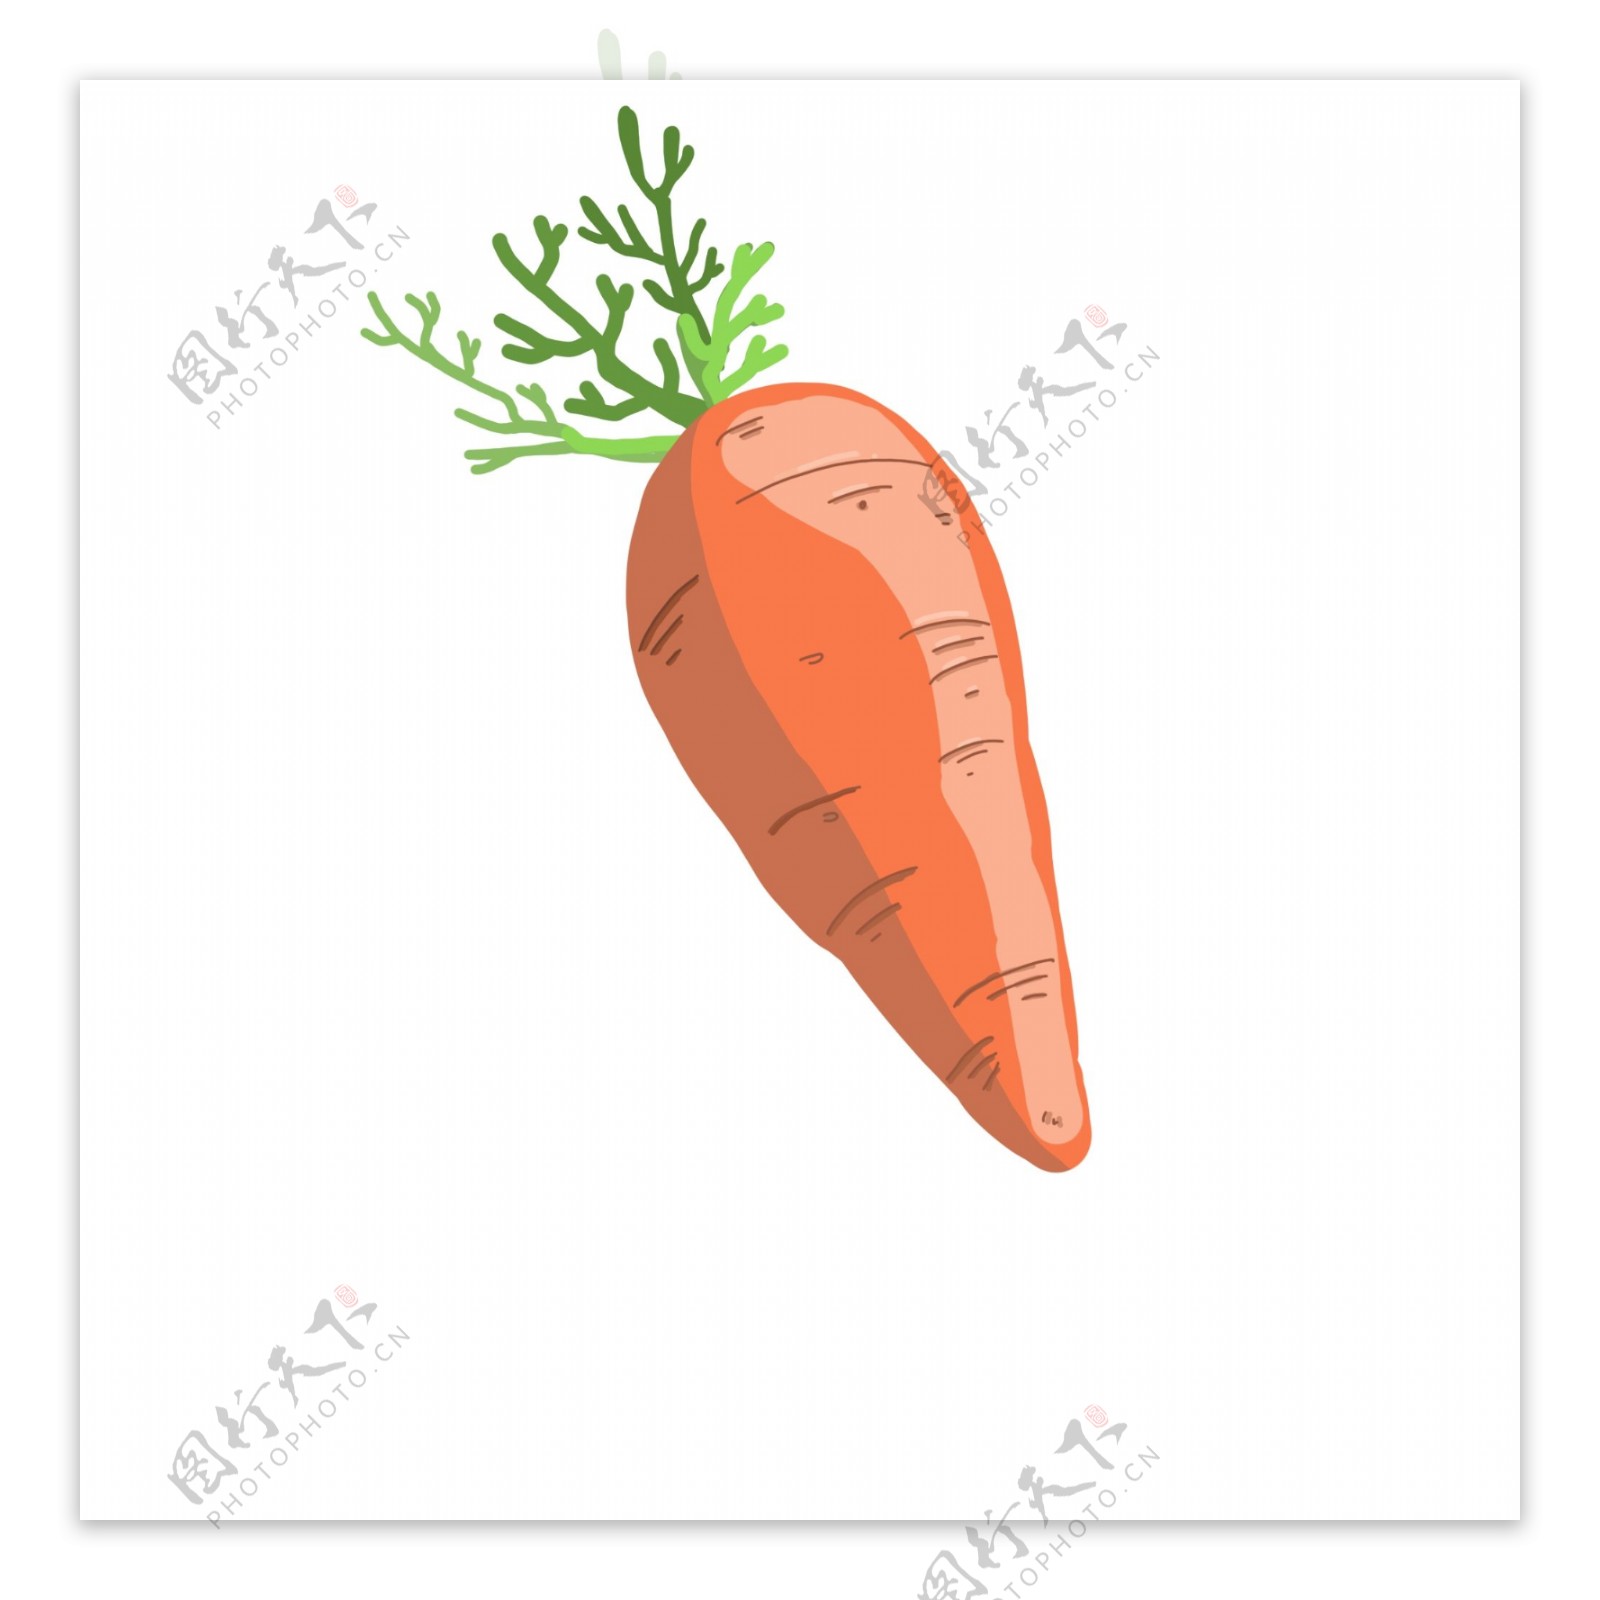 食材蔬菜胡萝卜